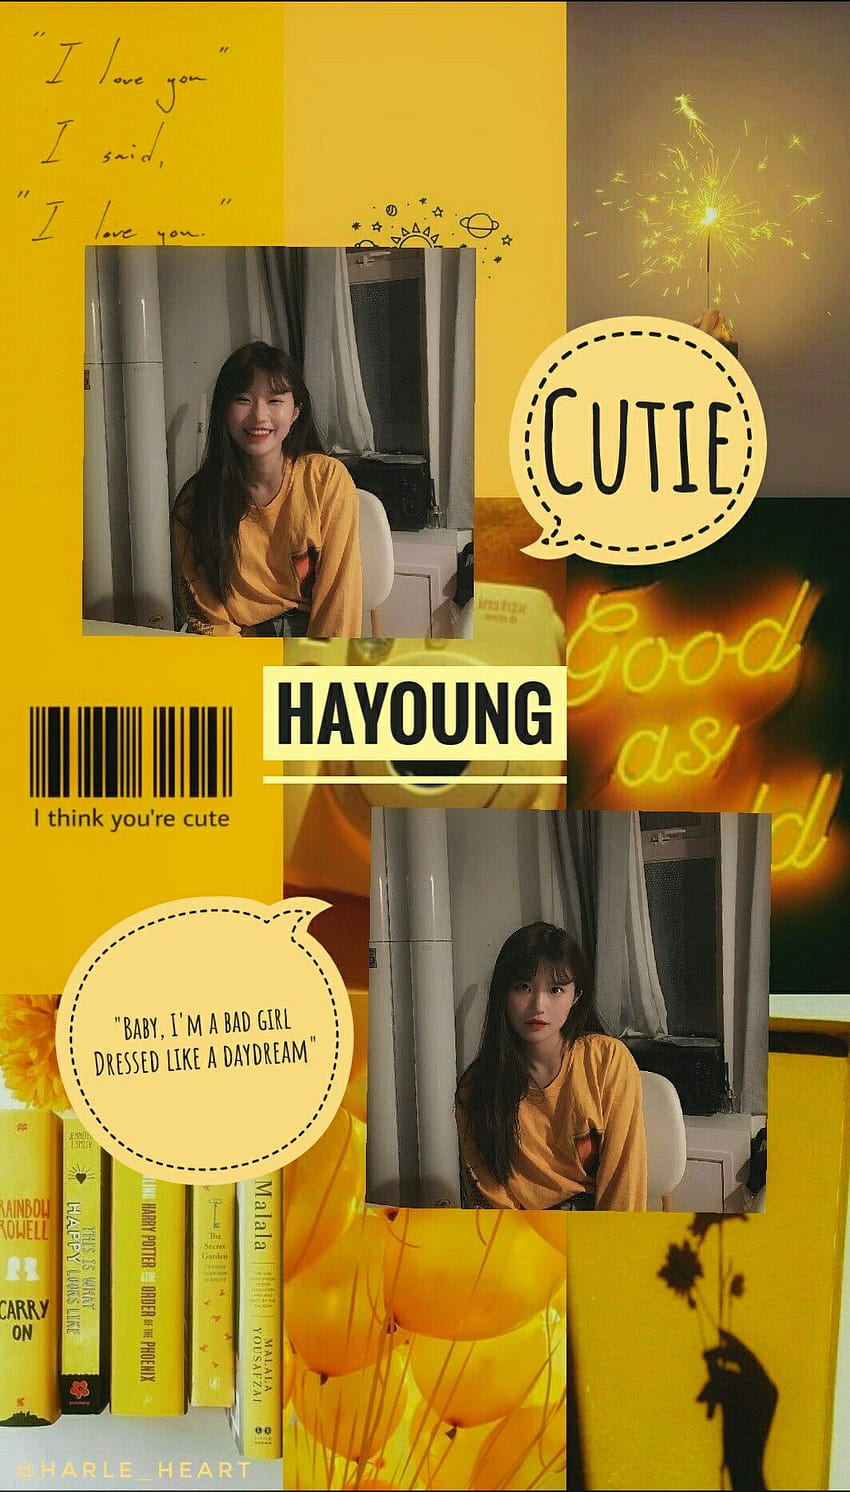 Song Hayoung, song ha young HD phone wallpaper